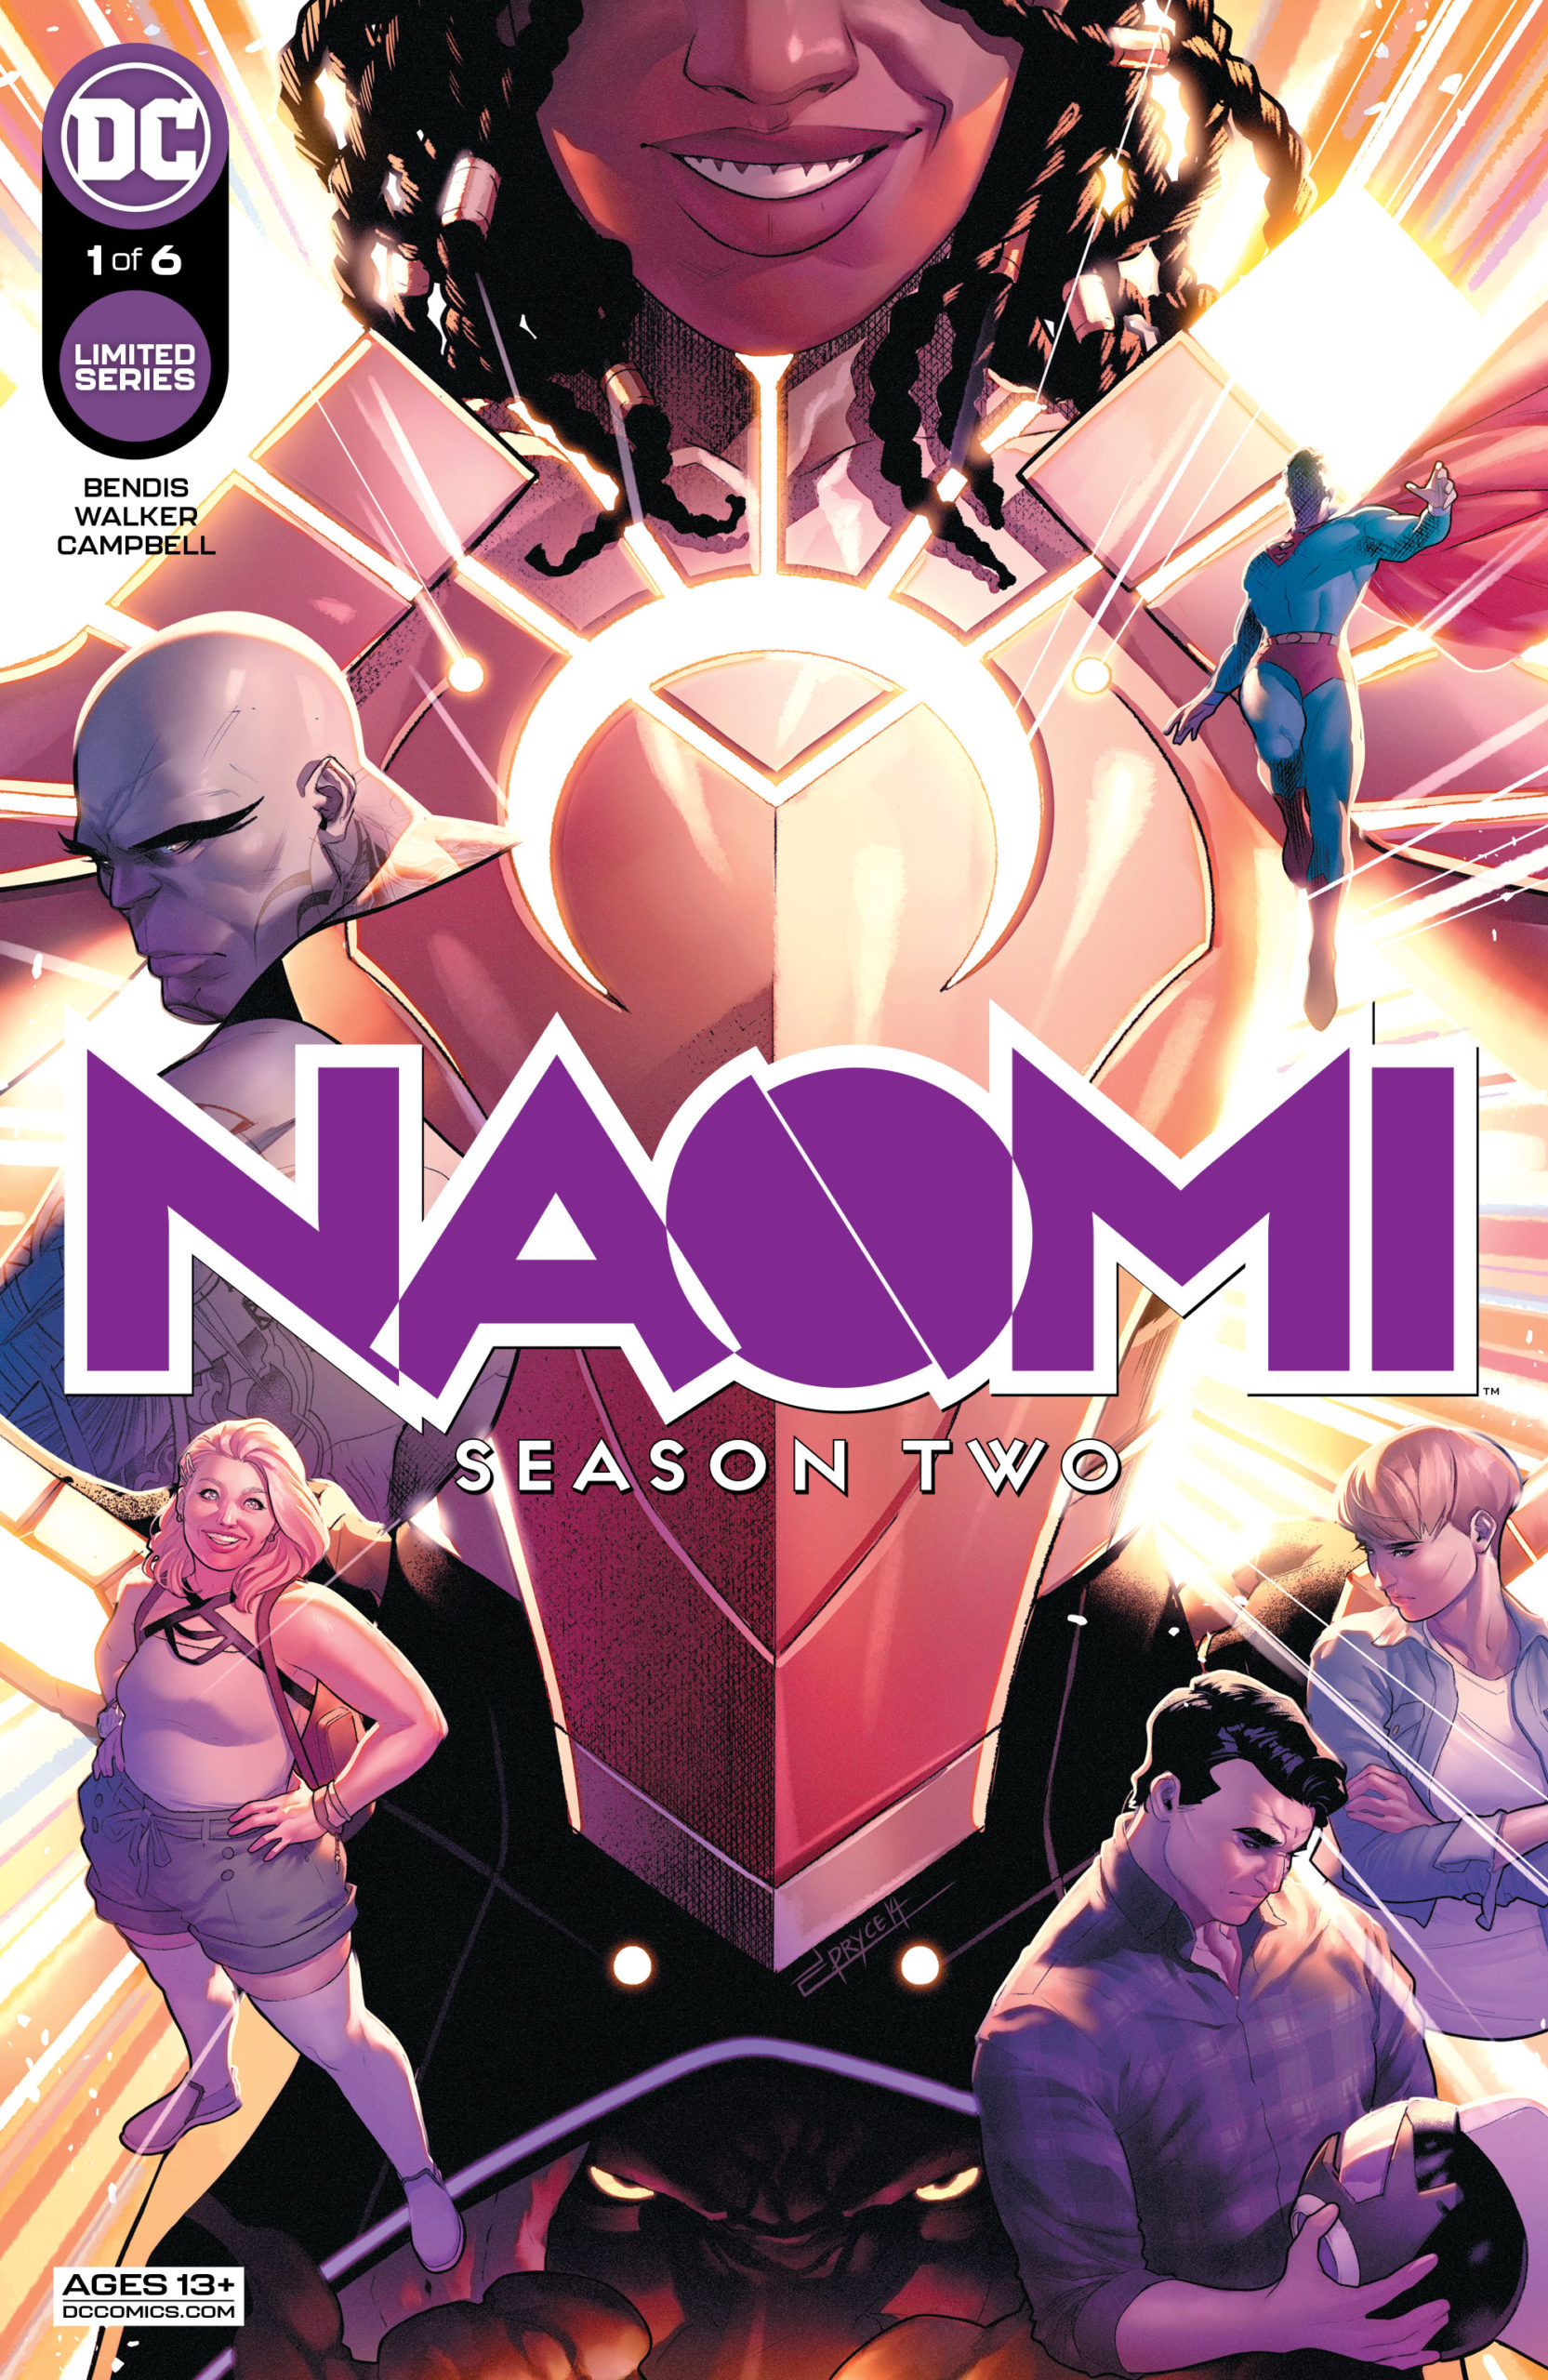 Naomi Season Two #1